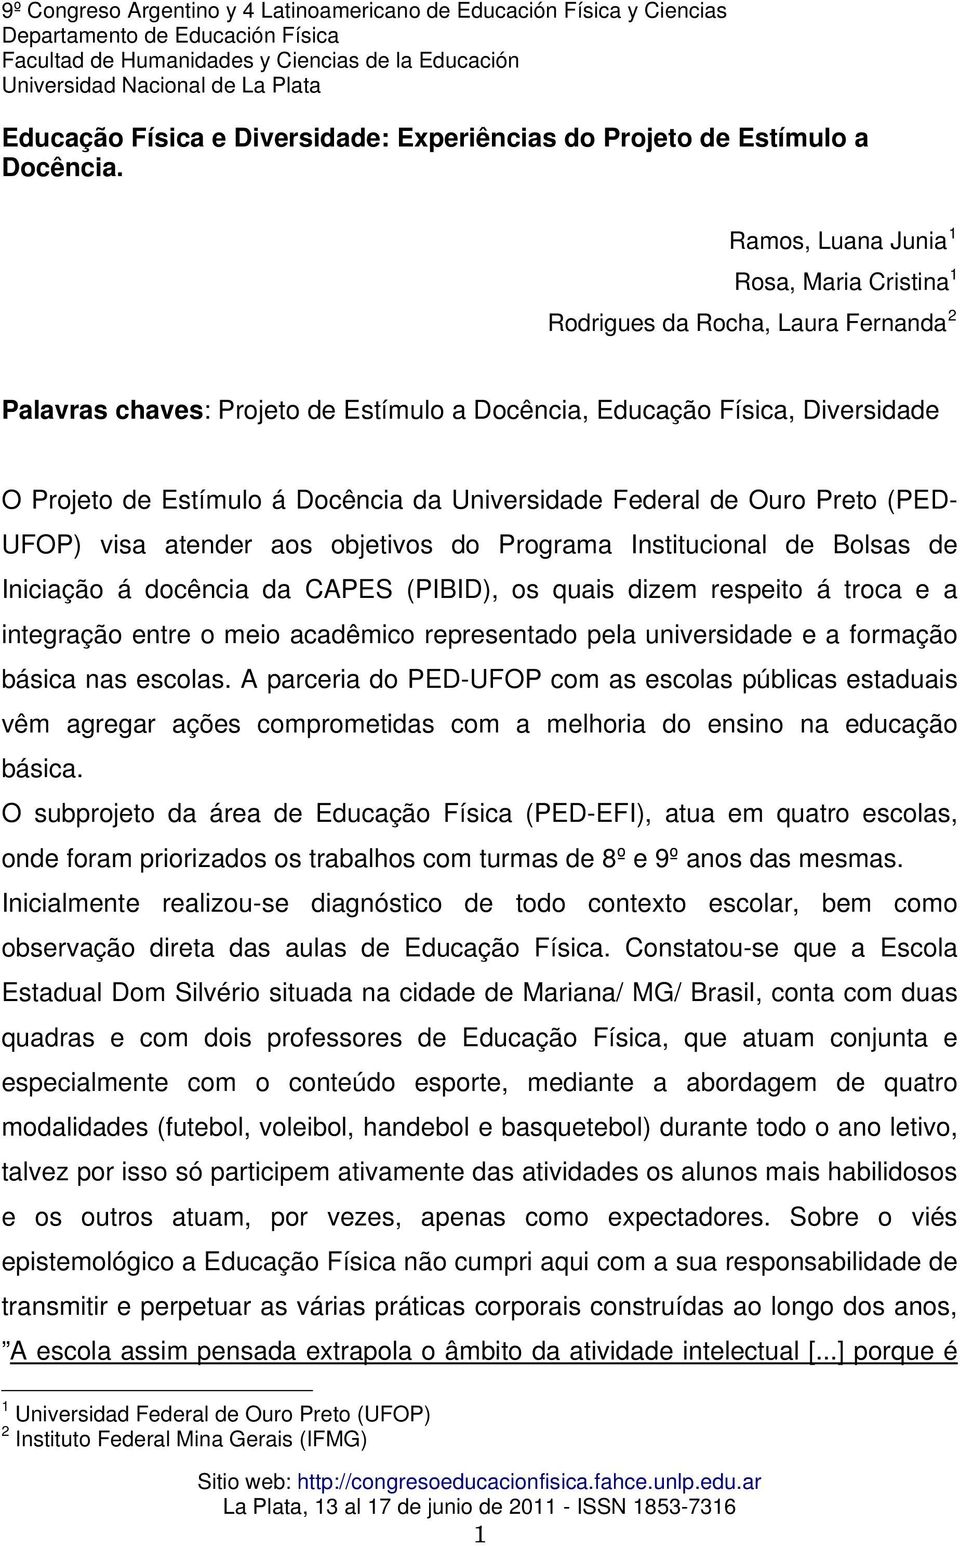 Universidade Federal de Ouro Preto (PED- UFOP) visa atender aos objetivos do Programa Institucional de Bolsas de Iniciação á docência da CAPES (PIBID), os quais dizem respeito á troca e a integração